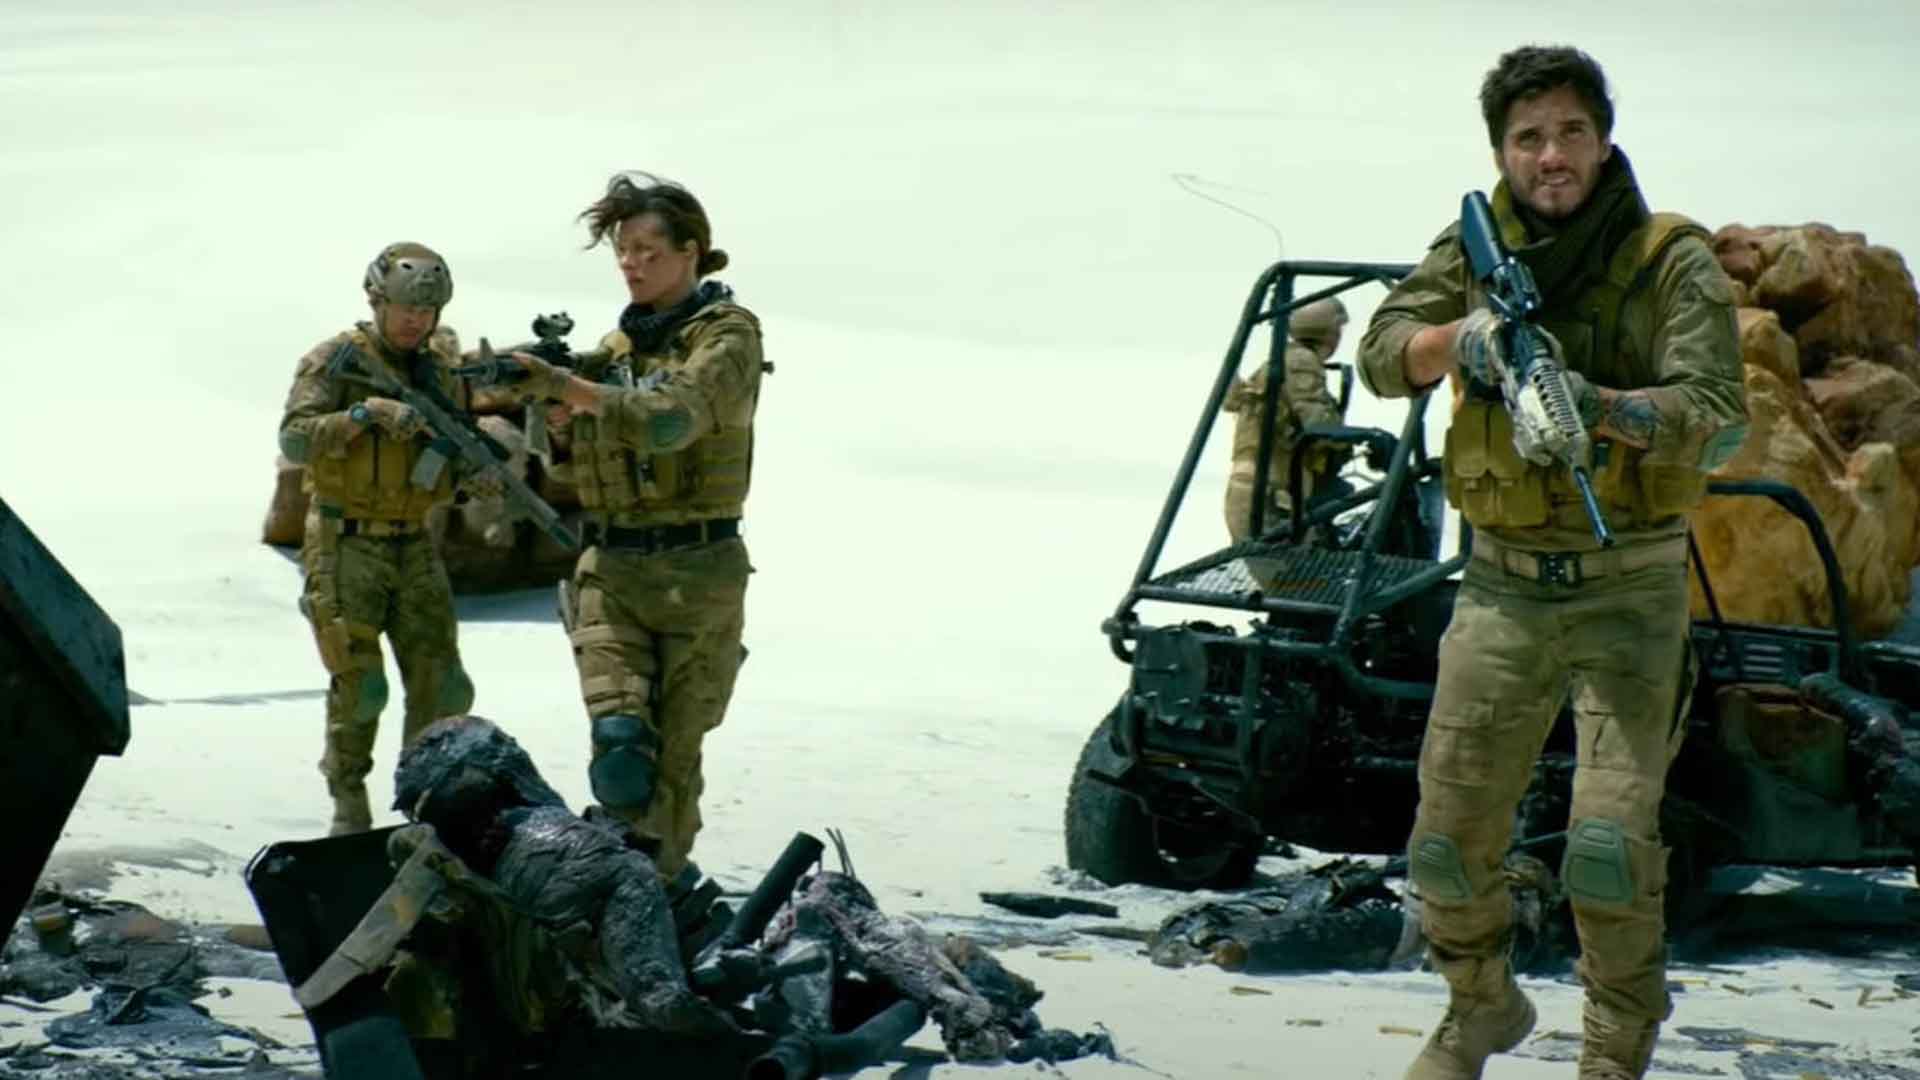 ستوان آرتمیس به همراه سربازان خود در فیلم Monster Hunter